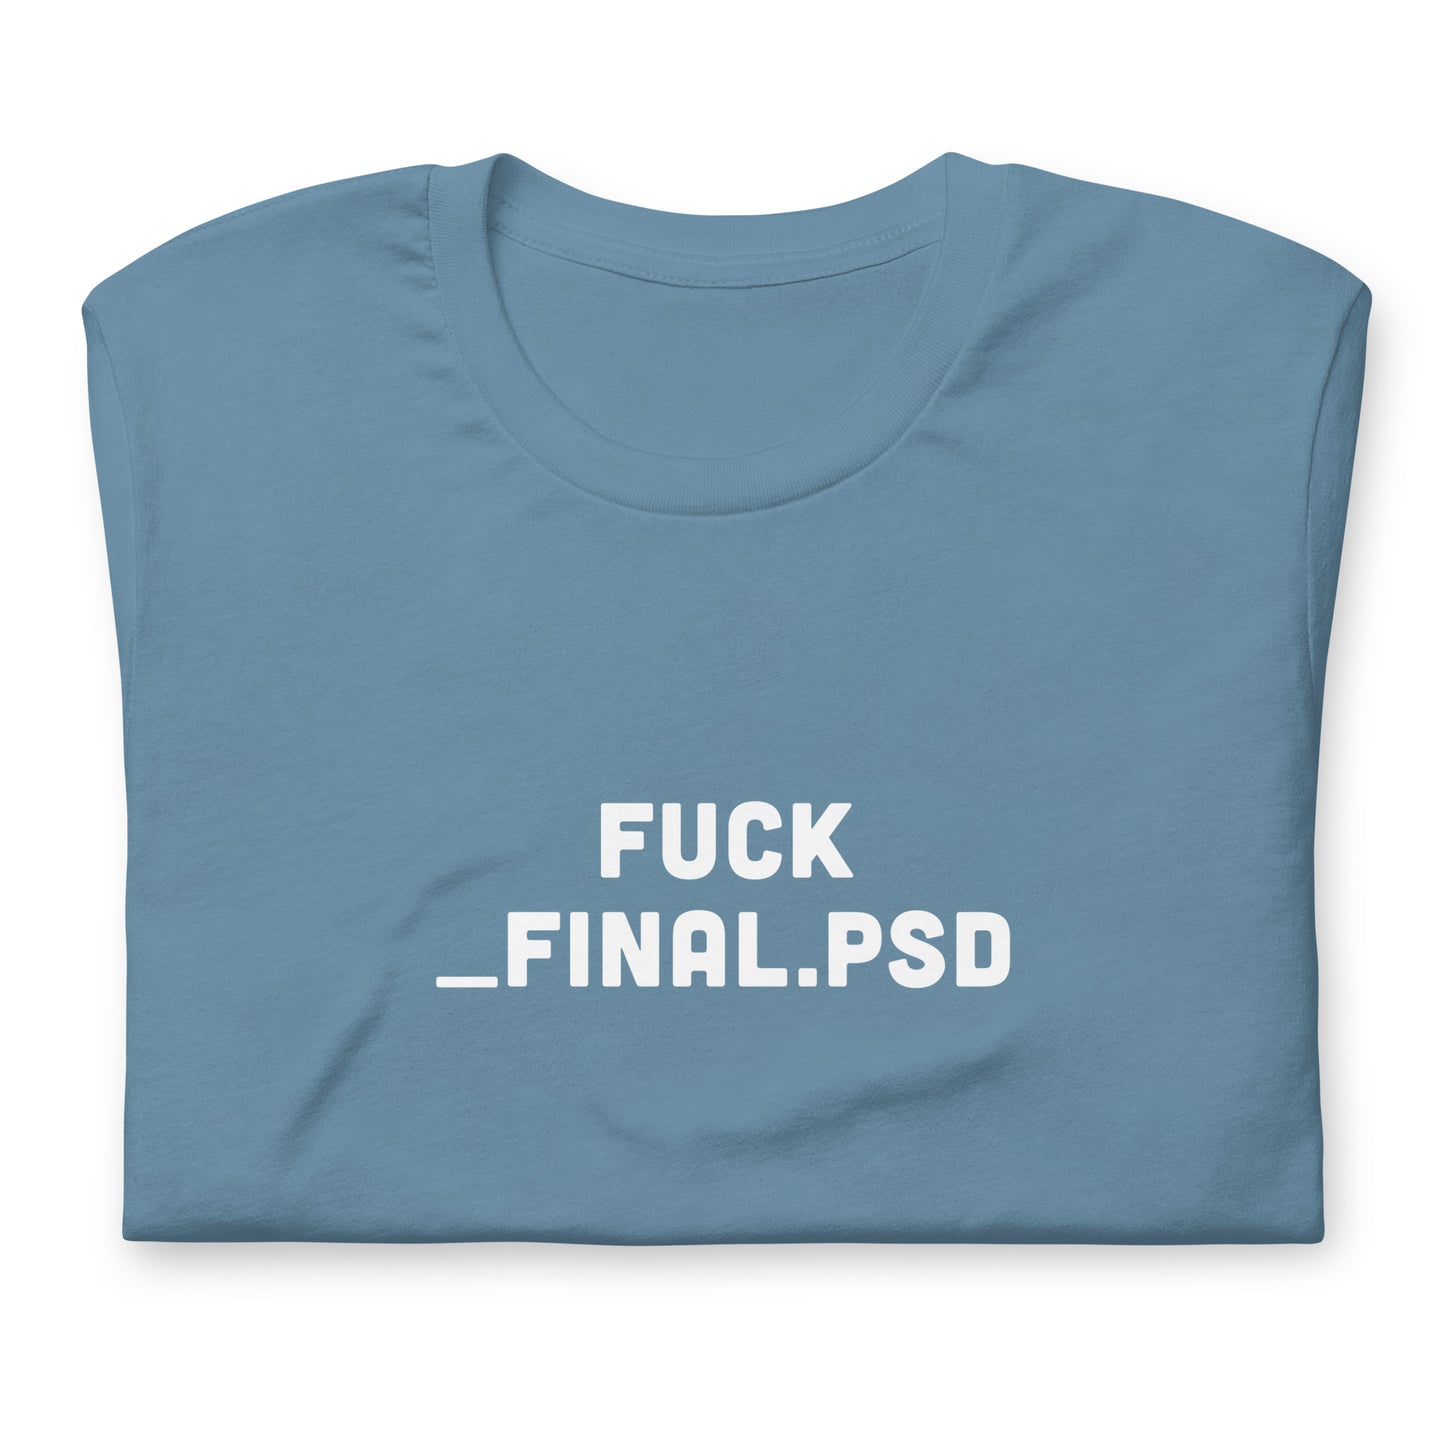 Fuck _final.psd Unisex t-shirt